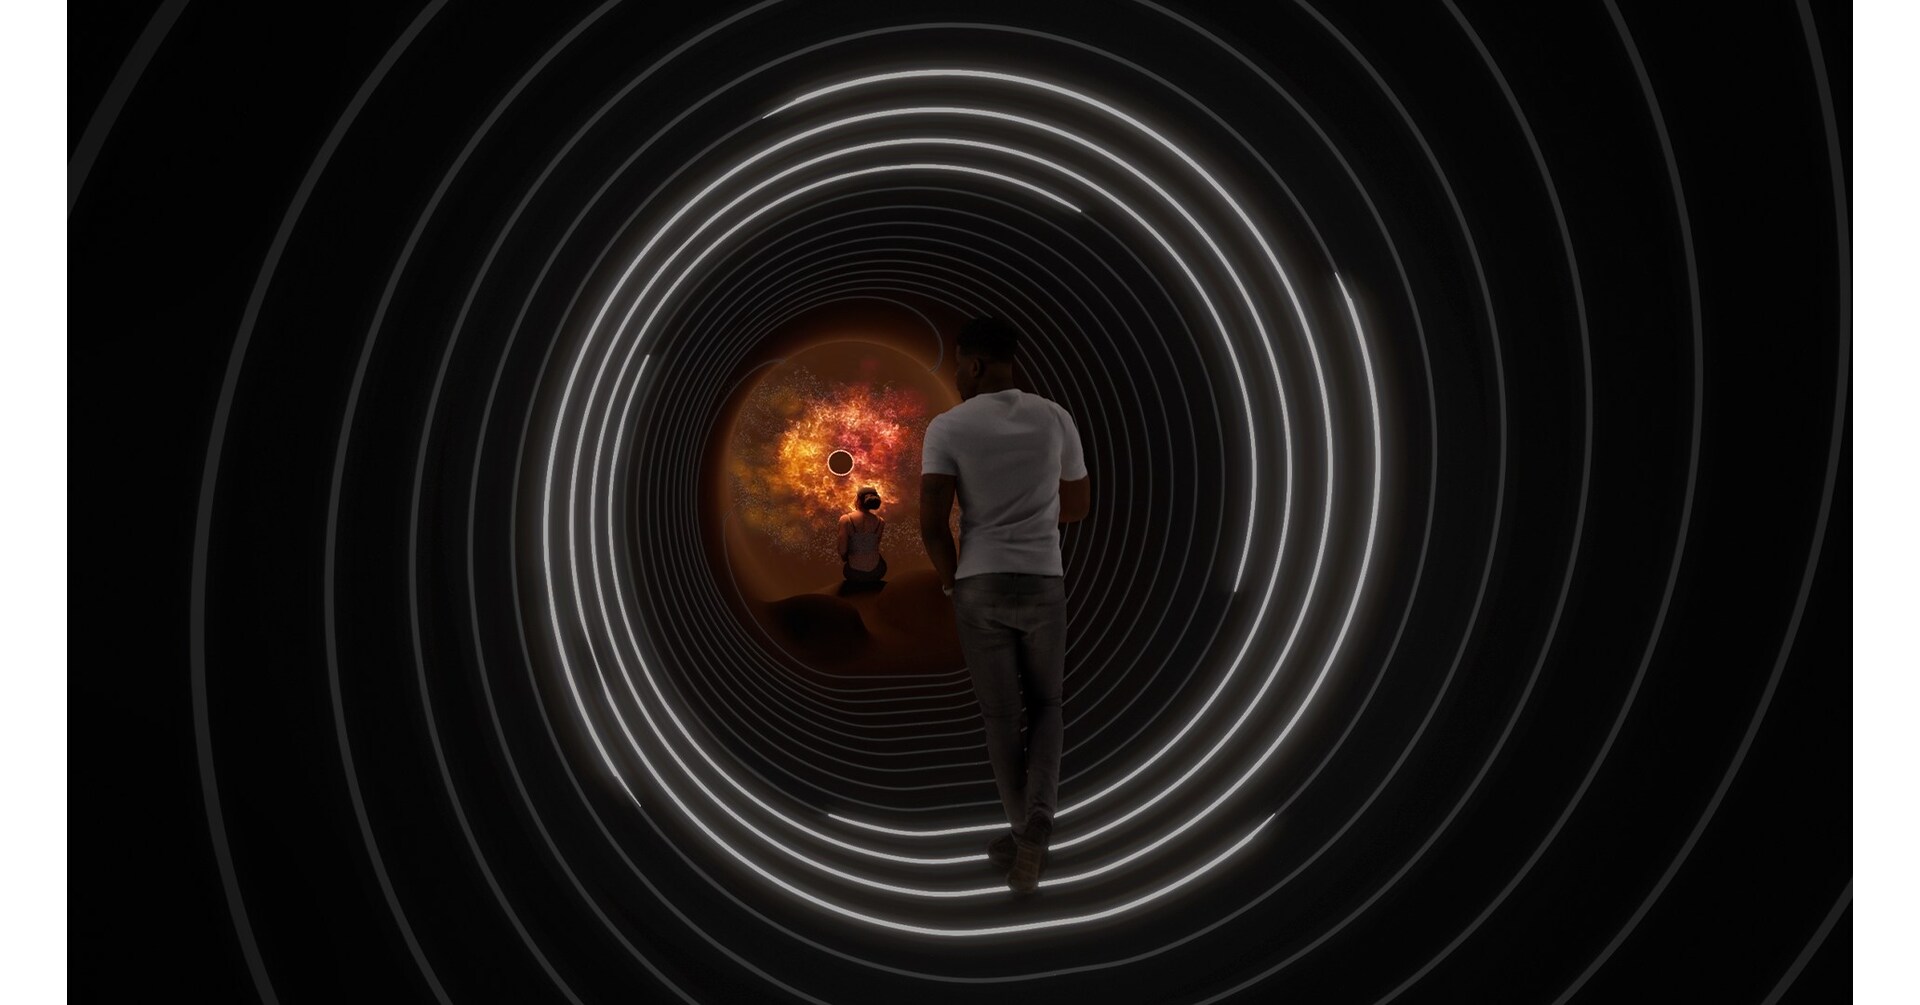 Age of Union memperkenalkan Black Hole Experience, sebuah pameran keliling yang mendalam yang mengatur ulang umat manusia